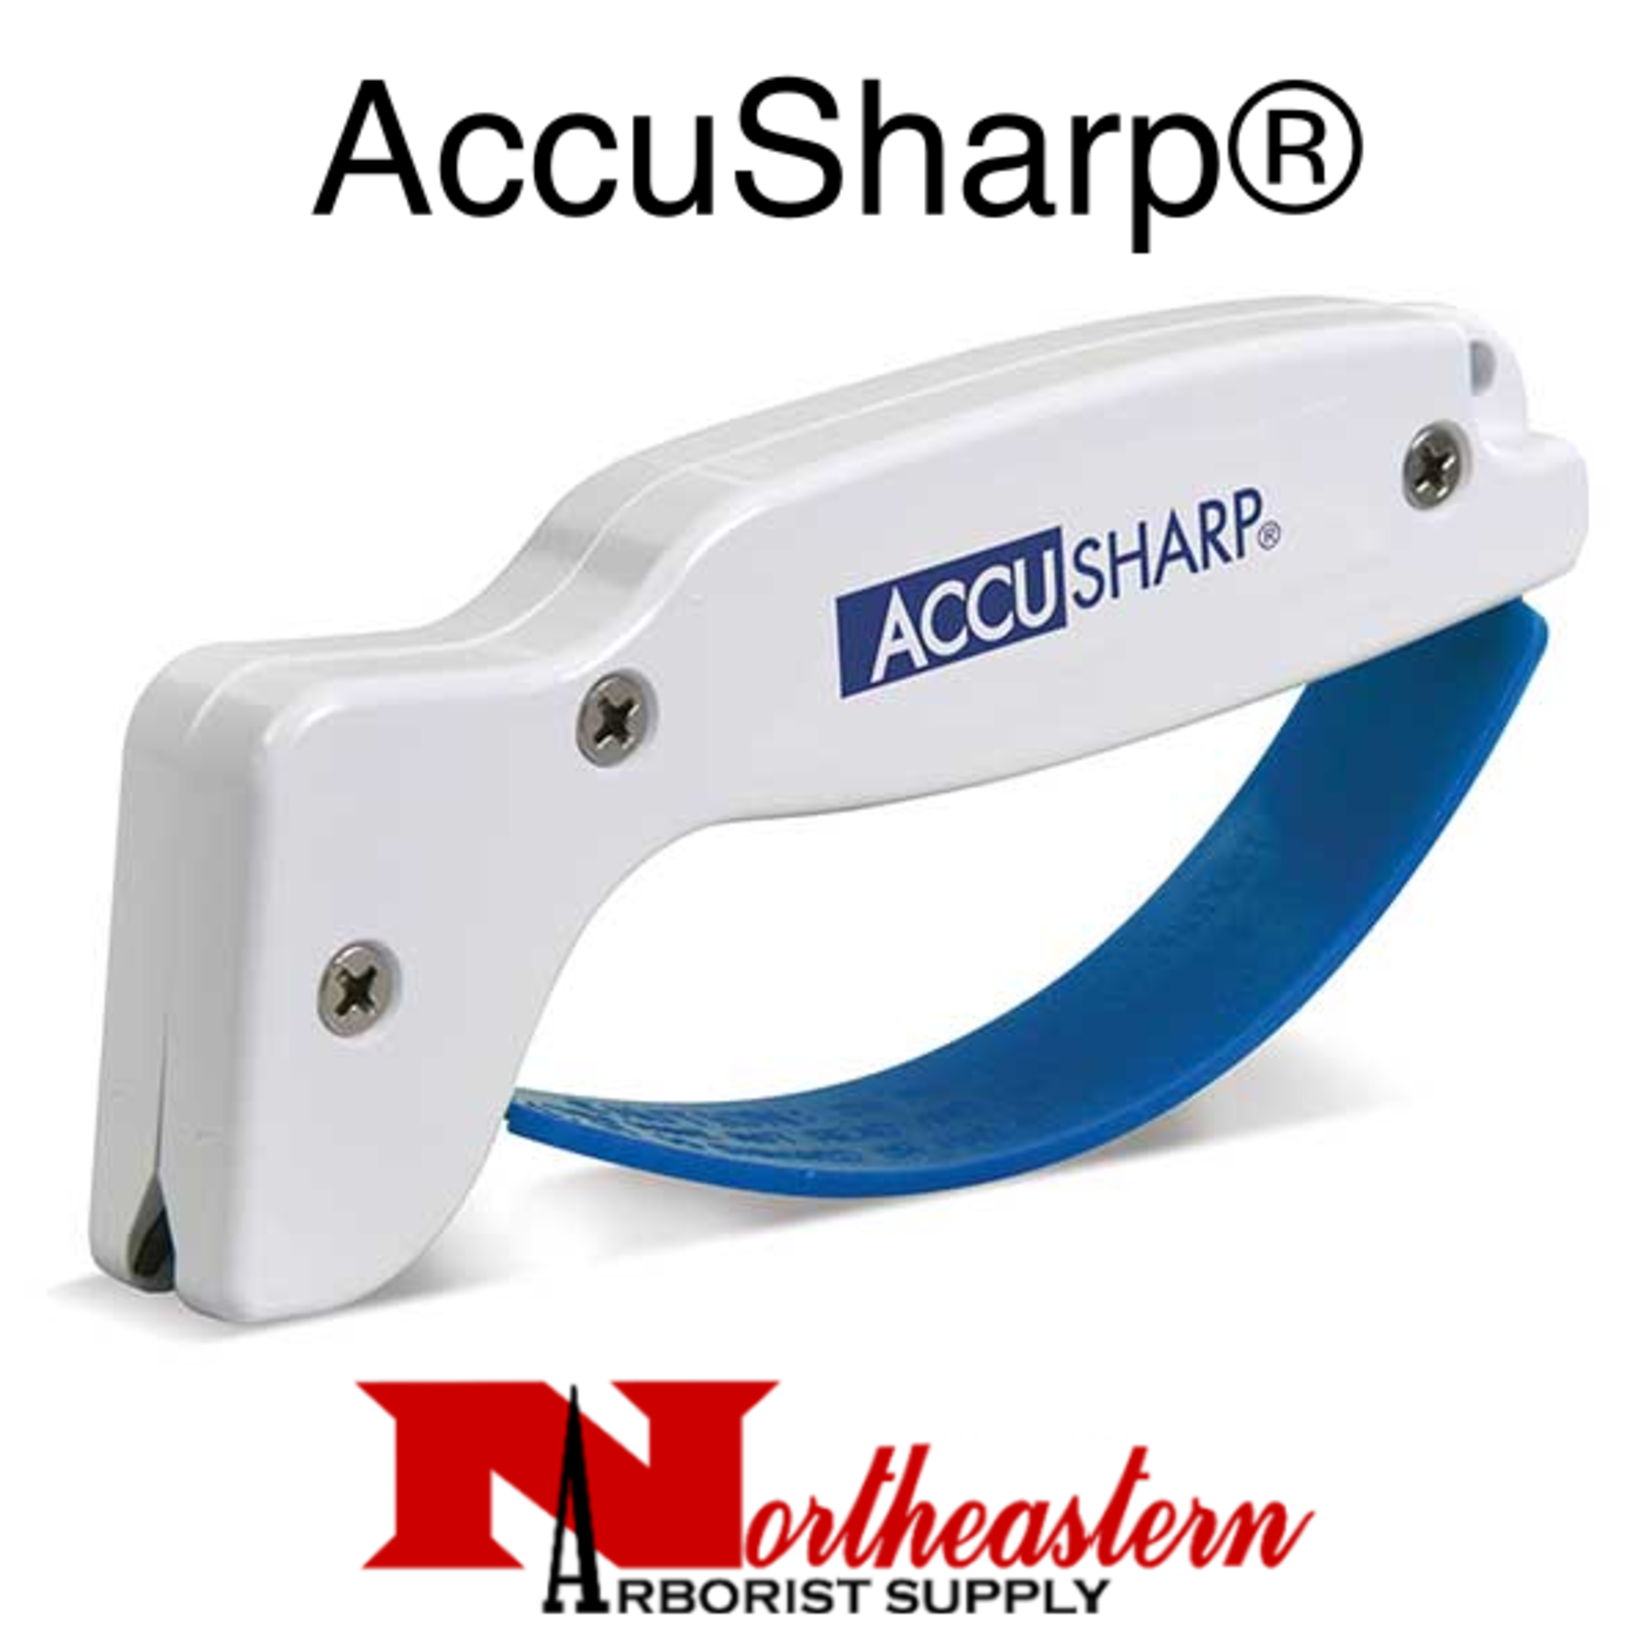 AccuSharp® Accusharp Knife & Tool Sharpener - White With Blue